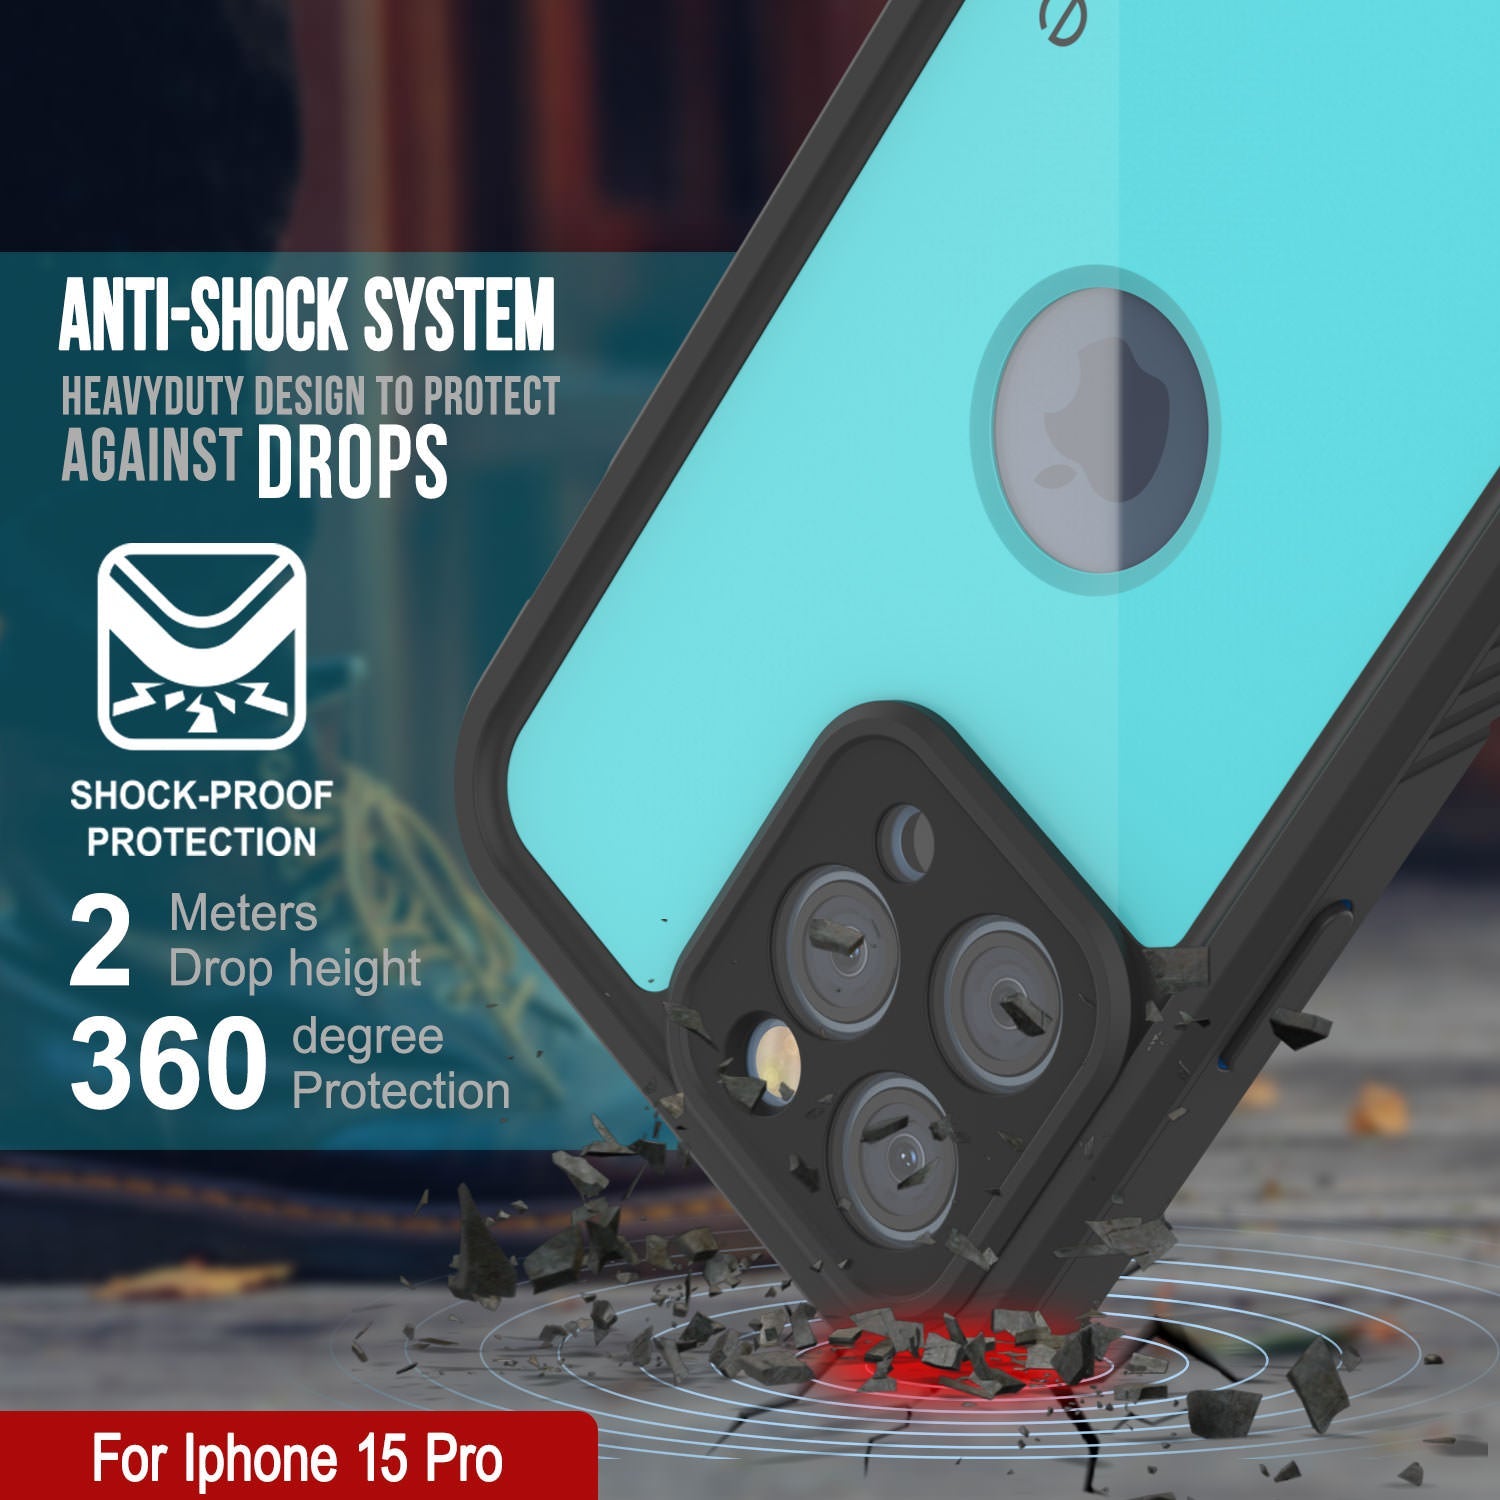 iPhone 15 Pro Waterproof IP68 Case, Punkcase [Teal] [StudStar Series] [Slim Fit]